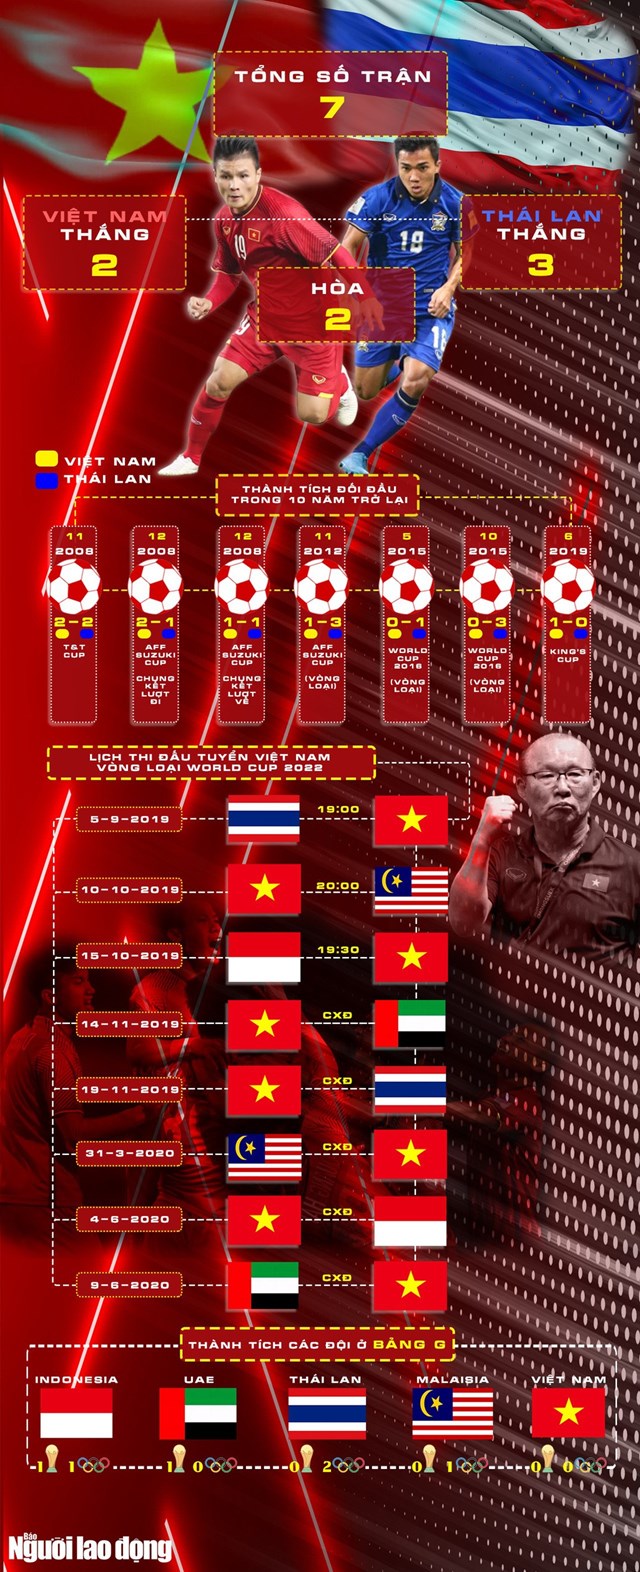  [Infographic] Lịch sử đối đầu tuyển Việt Nam - Thái Lan  - Ảnh 1